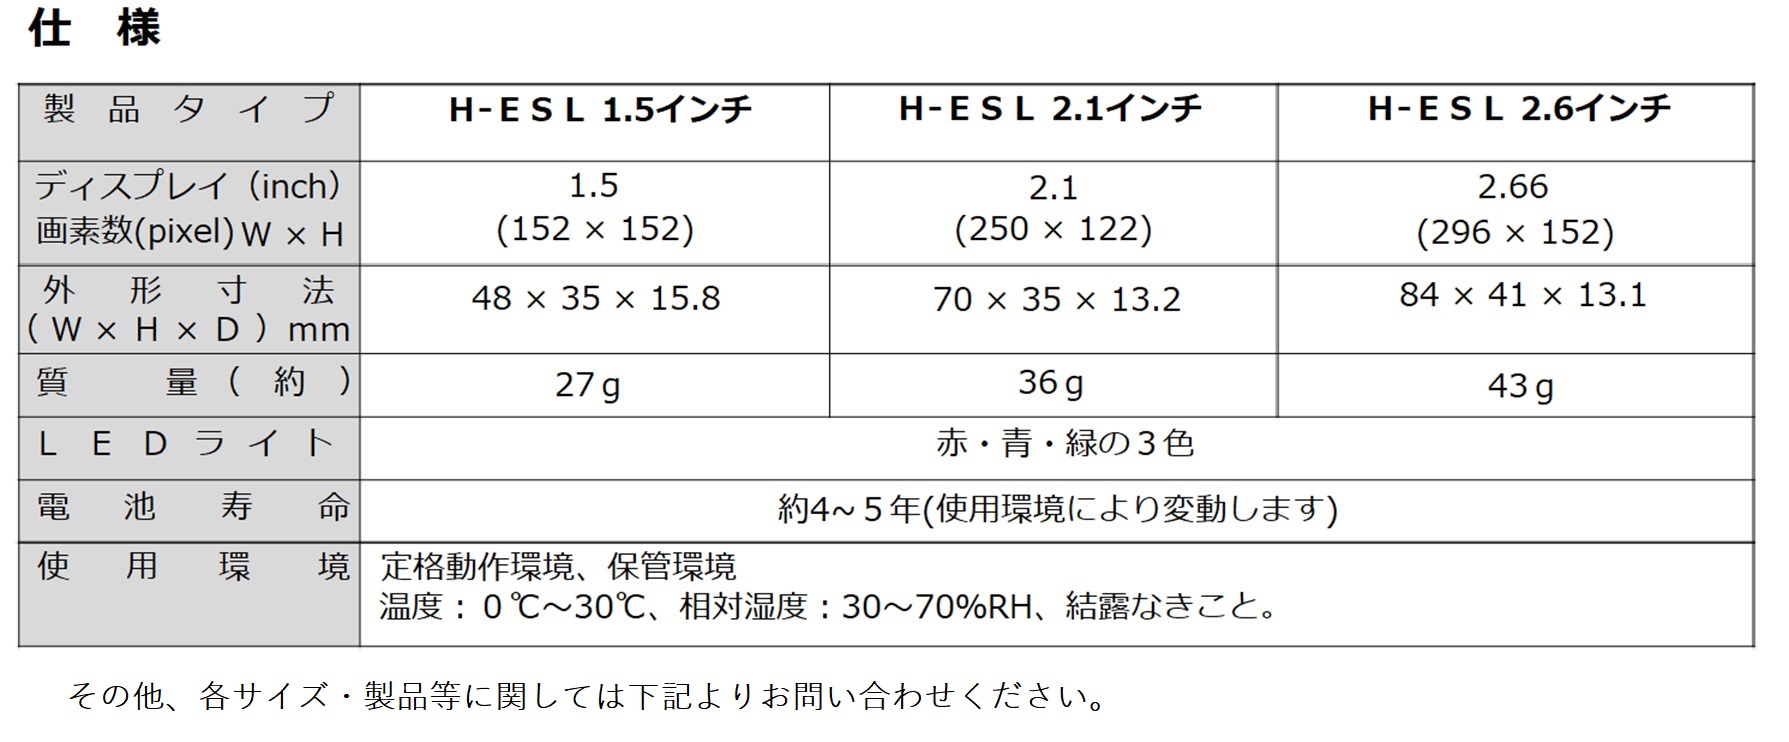 電子棚札 H-ESL 仕様表